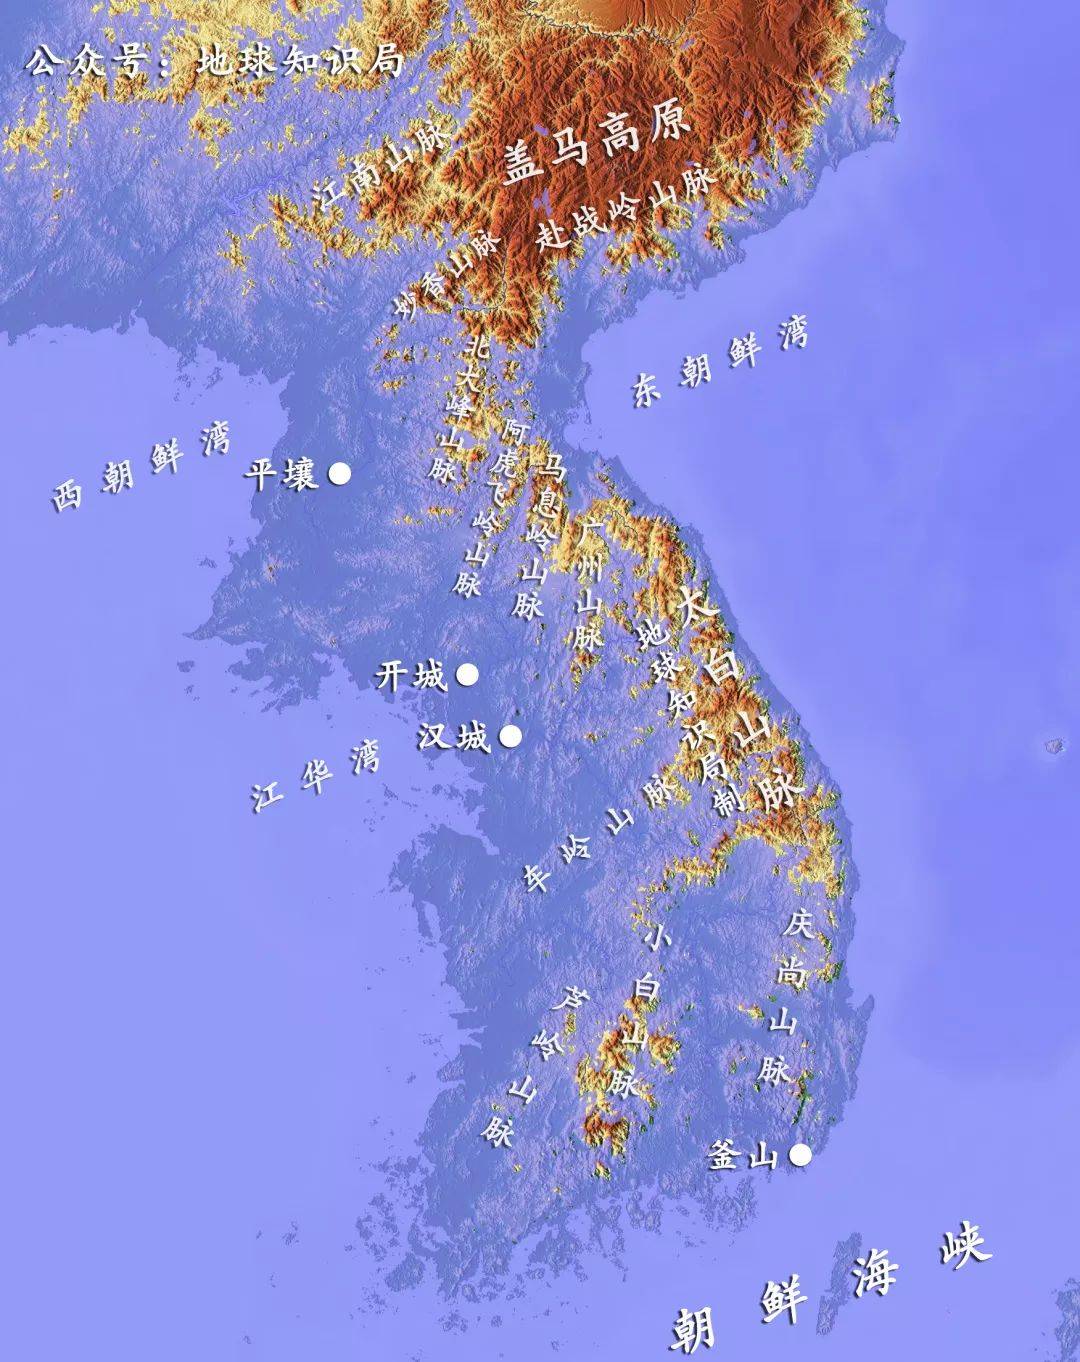 在洪水后的新世界格局里,长白山脉和朝鲜半岛上的太白山脉会连成一体